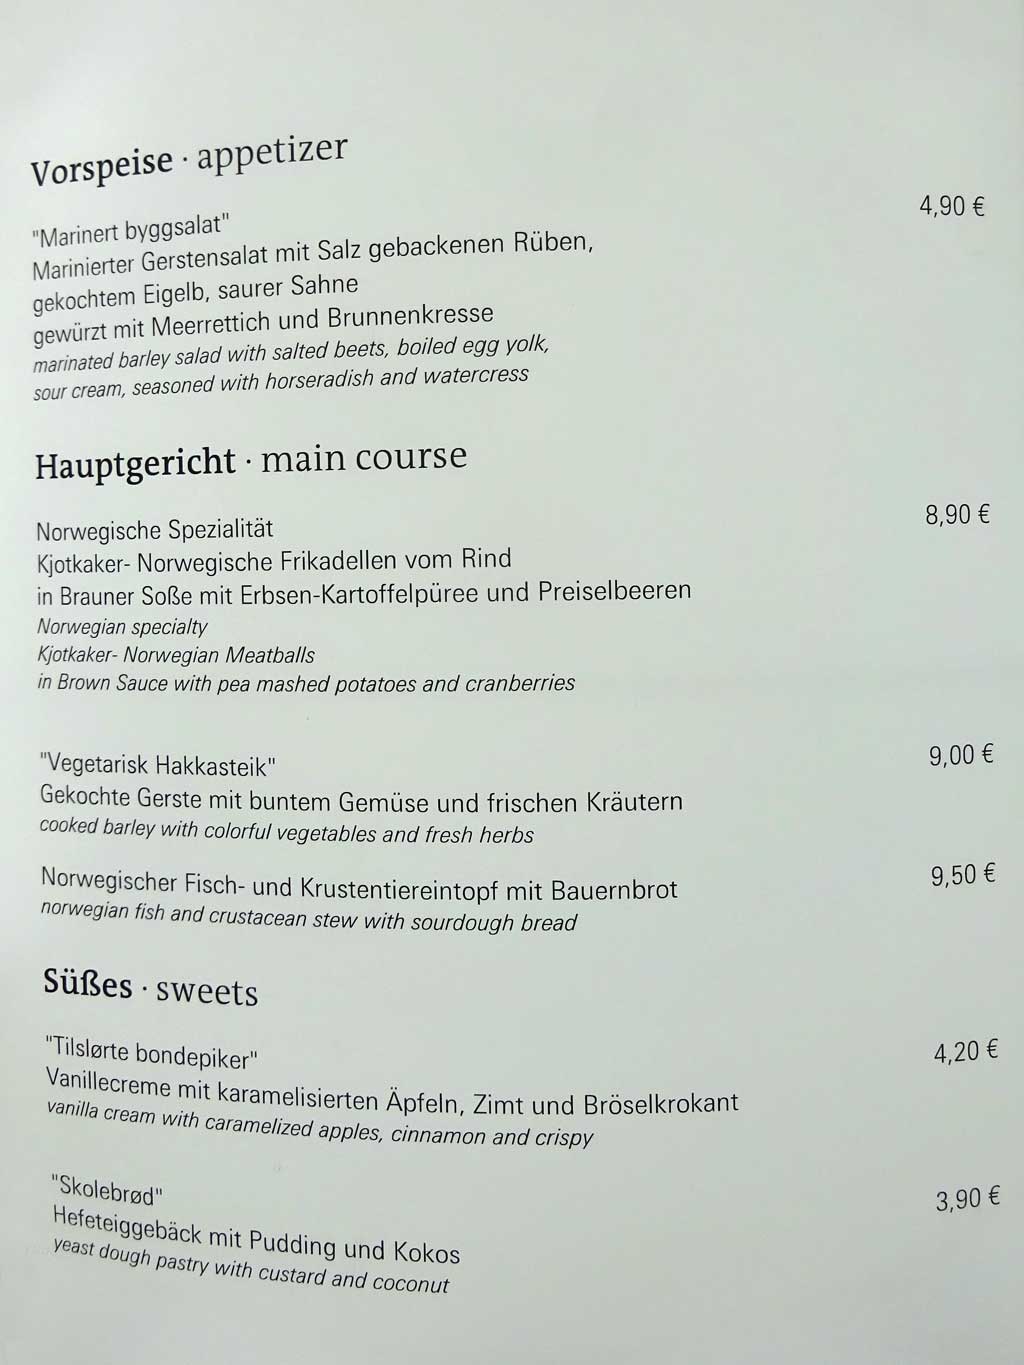 Frankfurter Buchmesse 2019 - Speiseplan